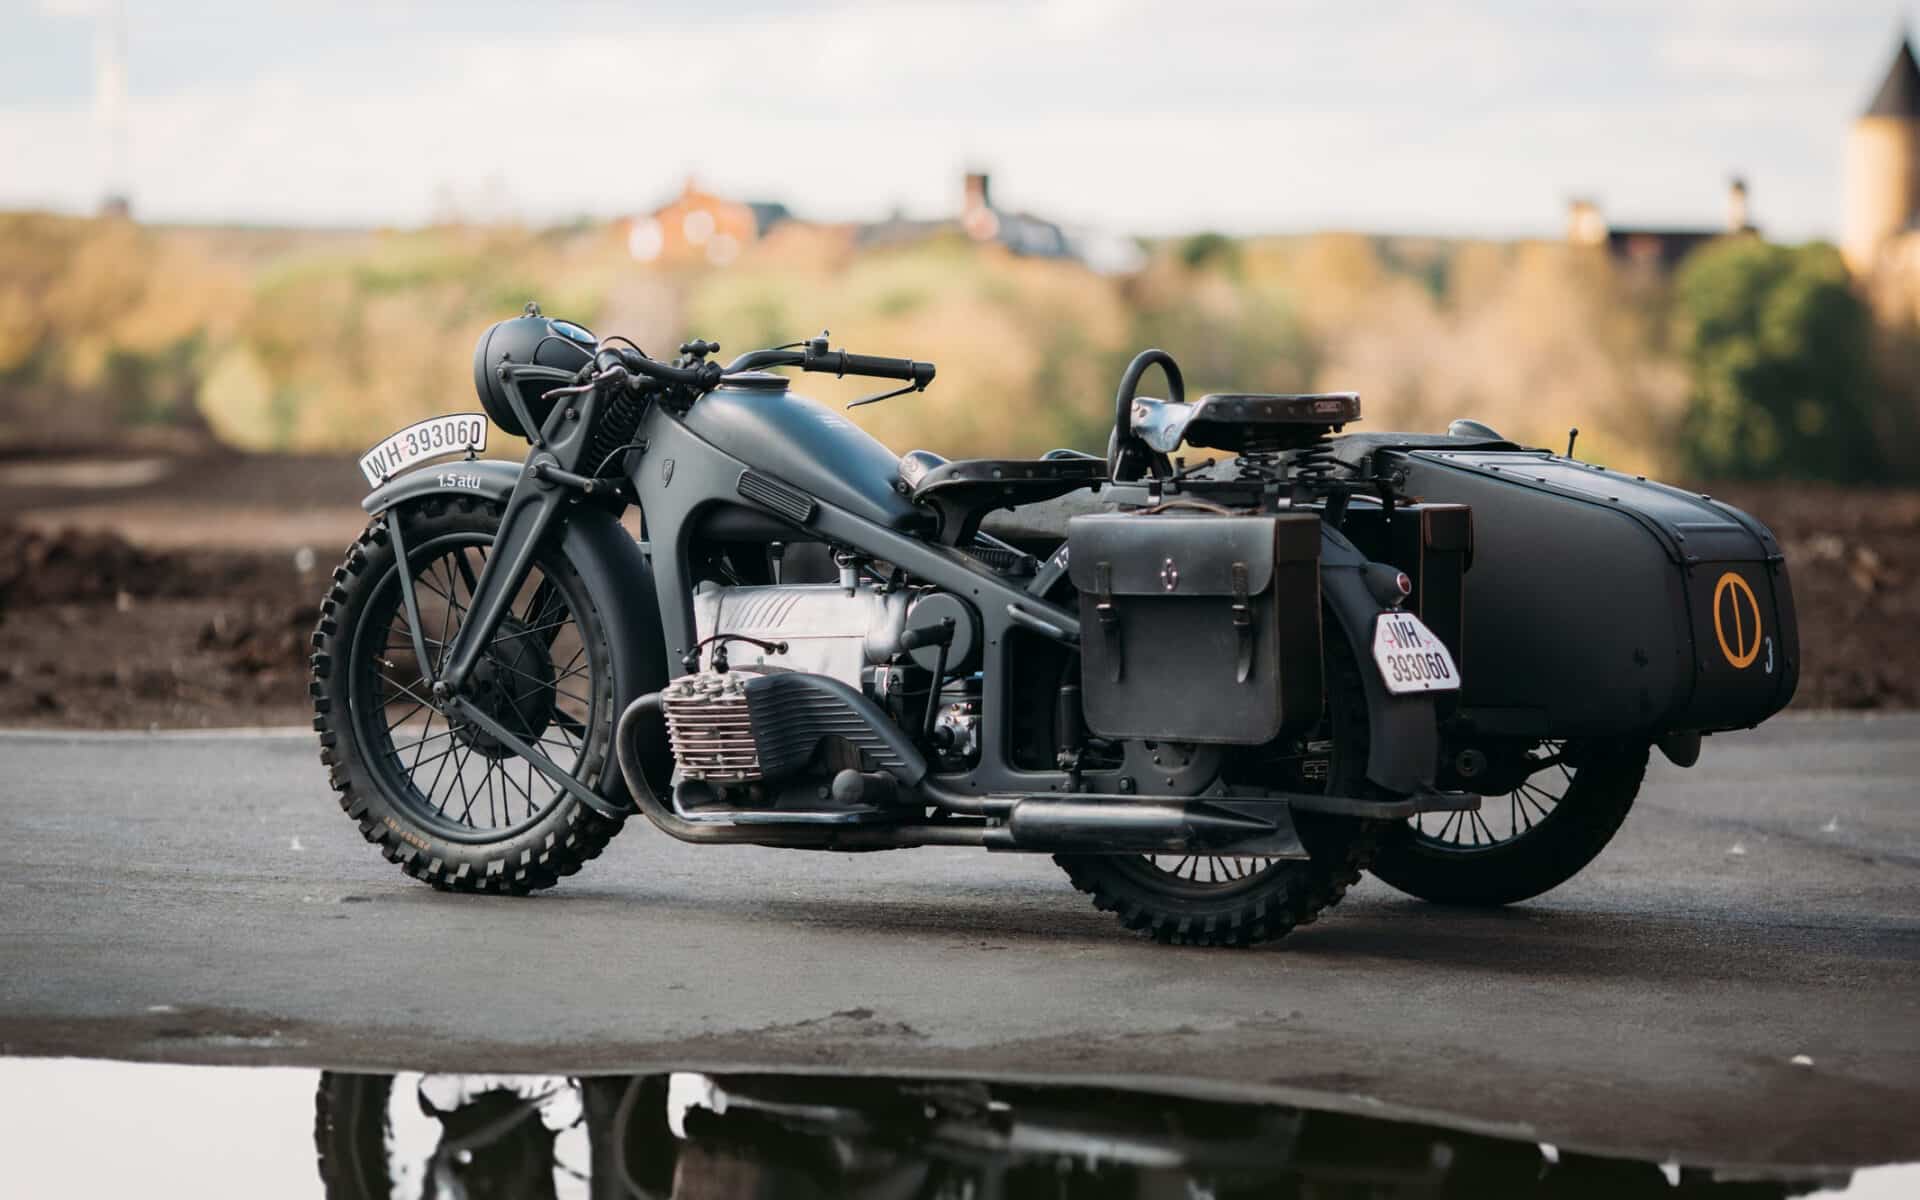 Zundapp K 800-W. Motocykl z II wojny światowej, czterocylindrowy